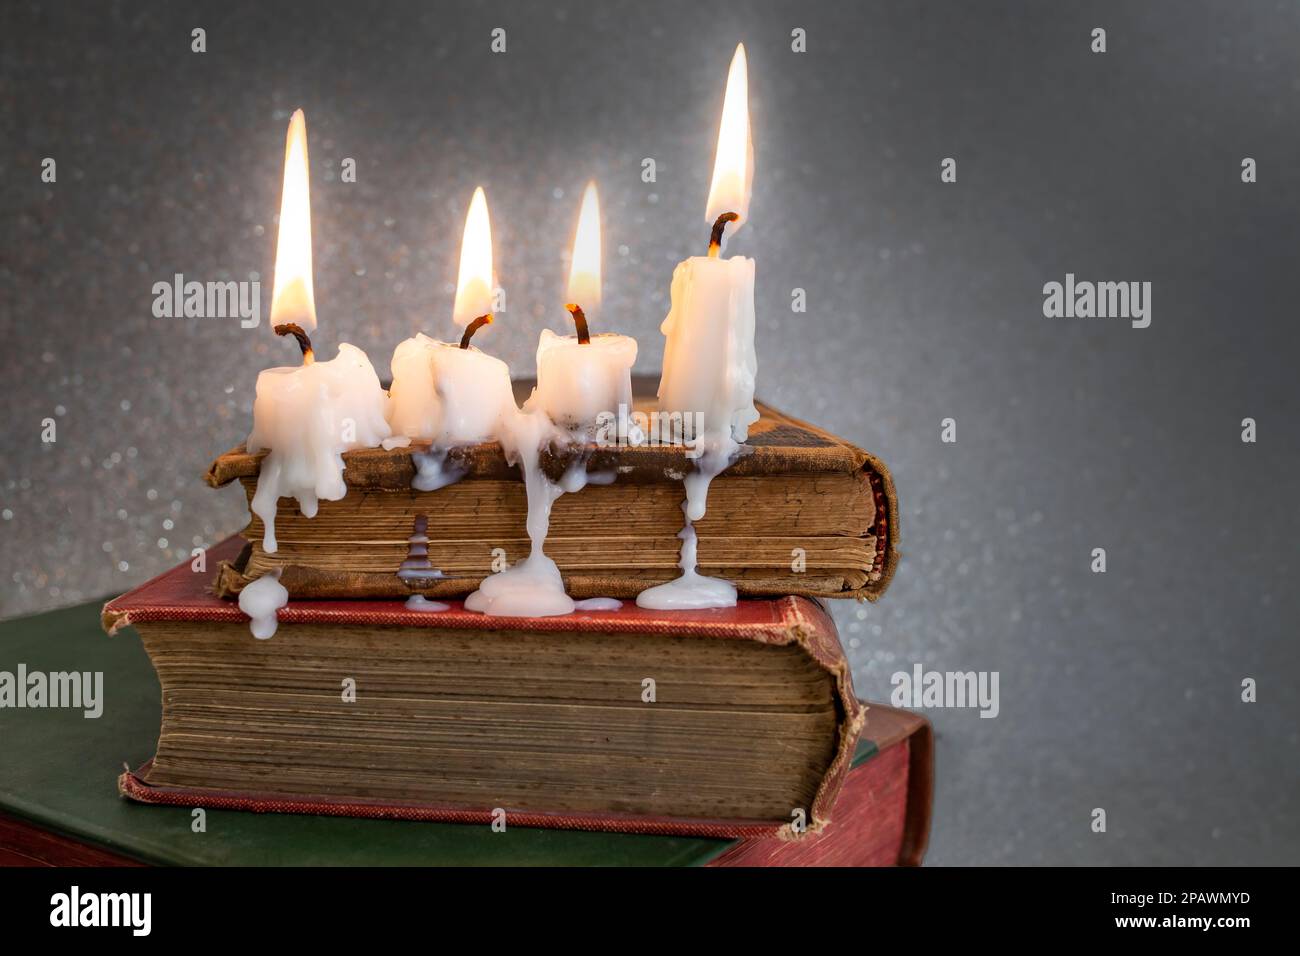 4 bougies allumées avec de la cire goutte à goutte sur des livres de couverture rigide vintage, mise au point douce gros plan Banque D'Images